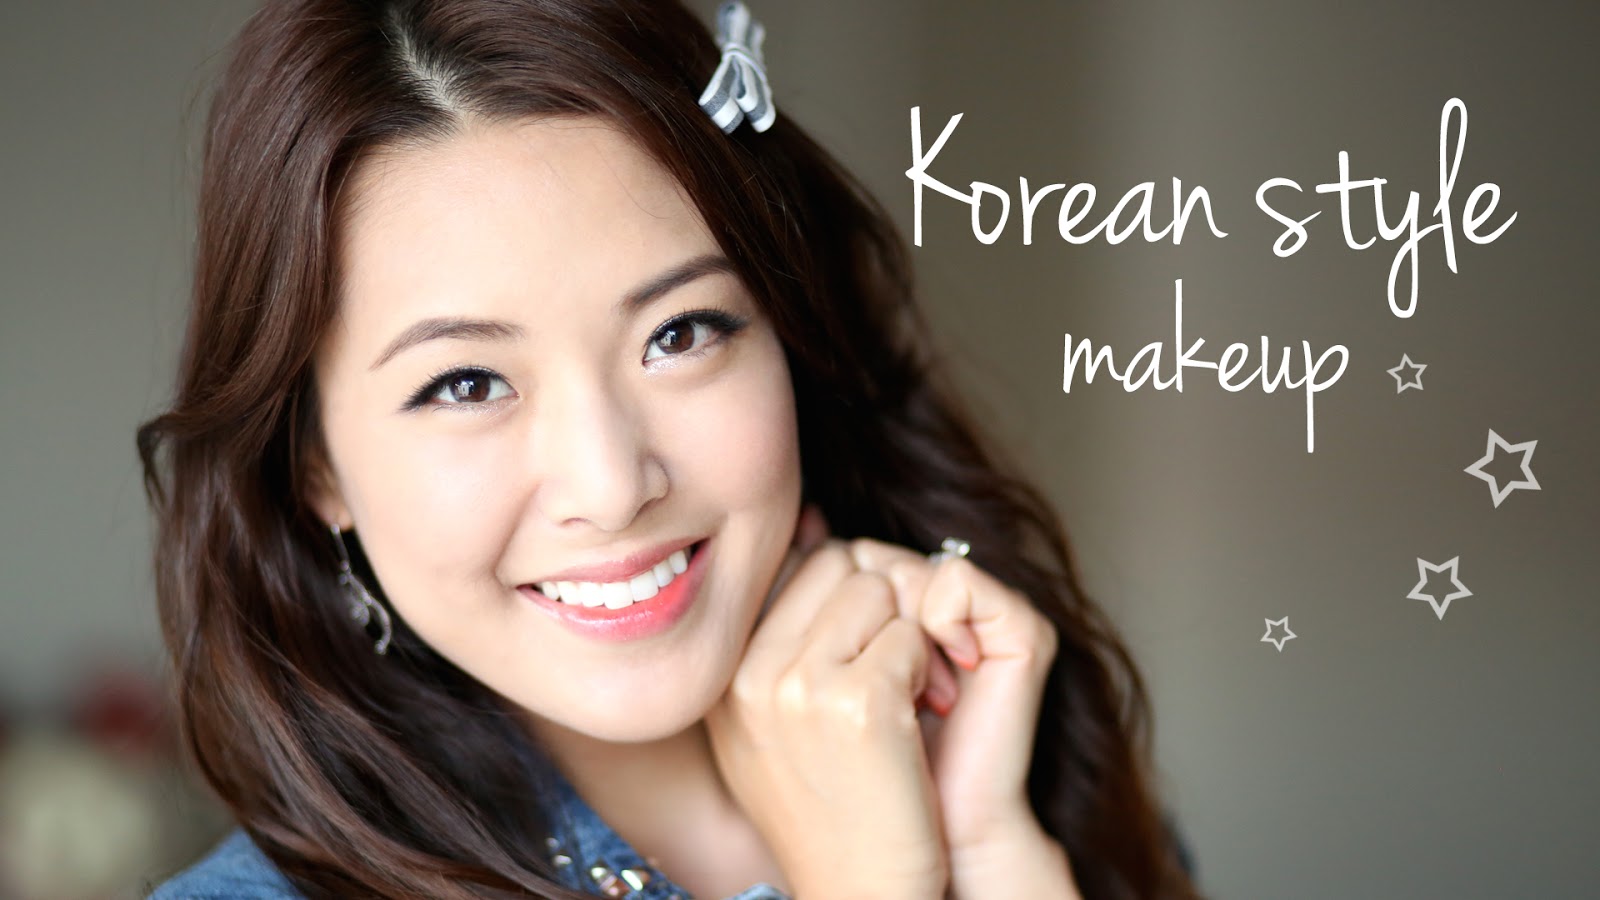 Korean Picture